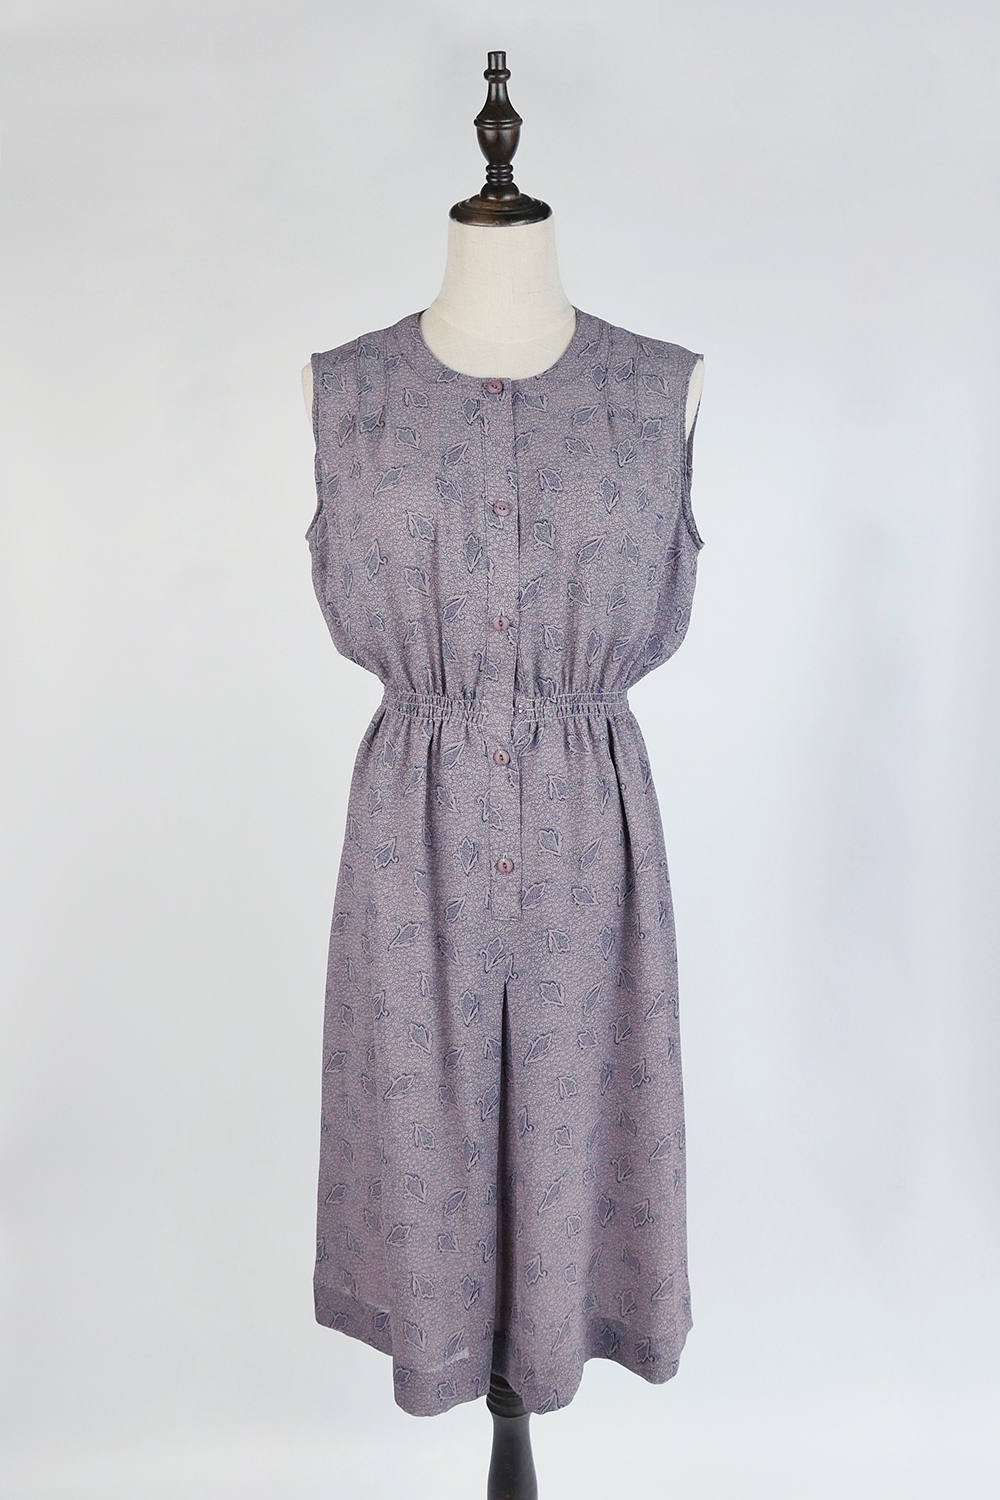 Vintage Japanese Dress Upcycled Vintage Dress Navy Leaf | Etsy